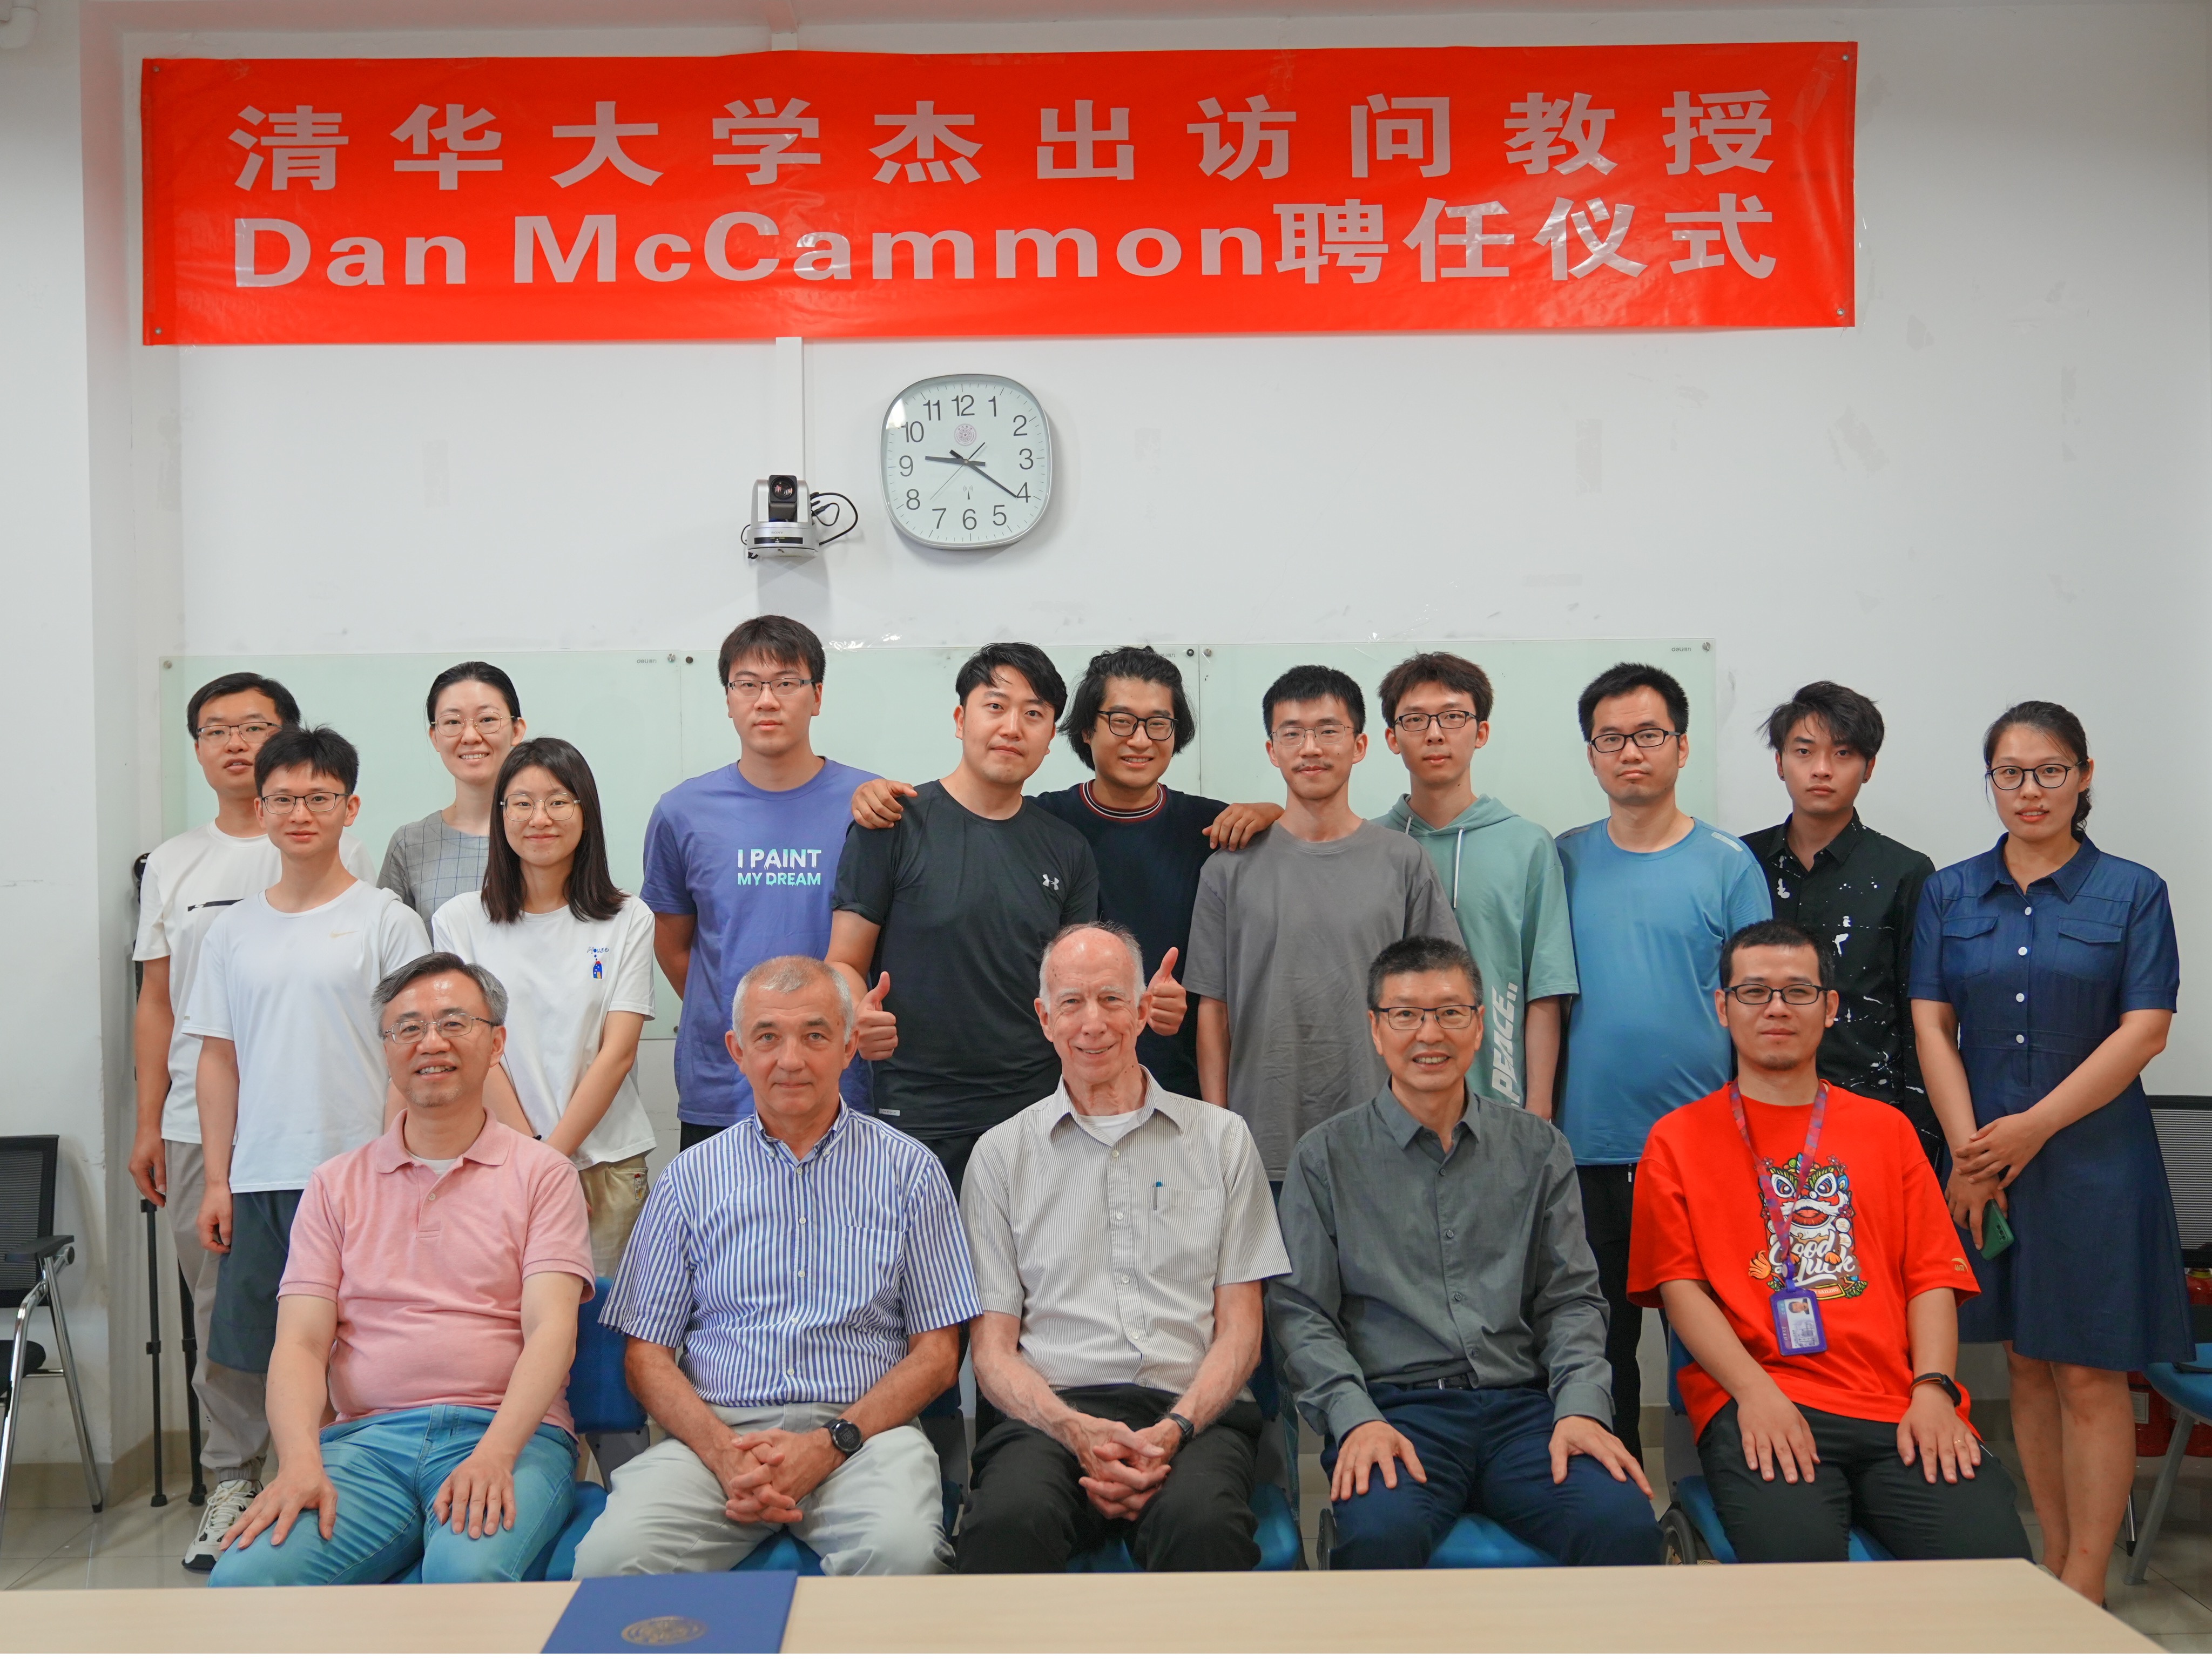 清华大学杰出访问教授Dan McCammon 聘任仪式在天文系举行